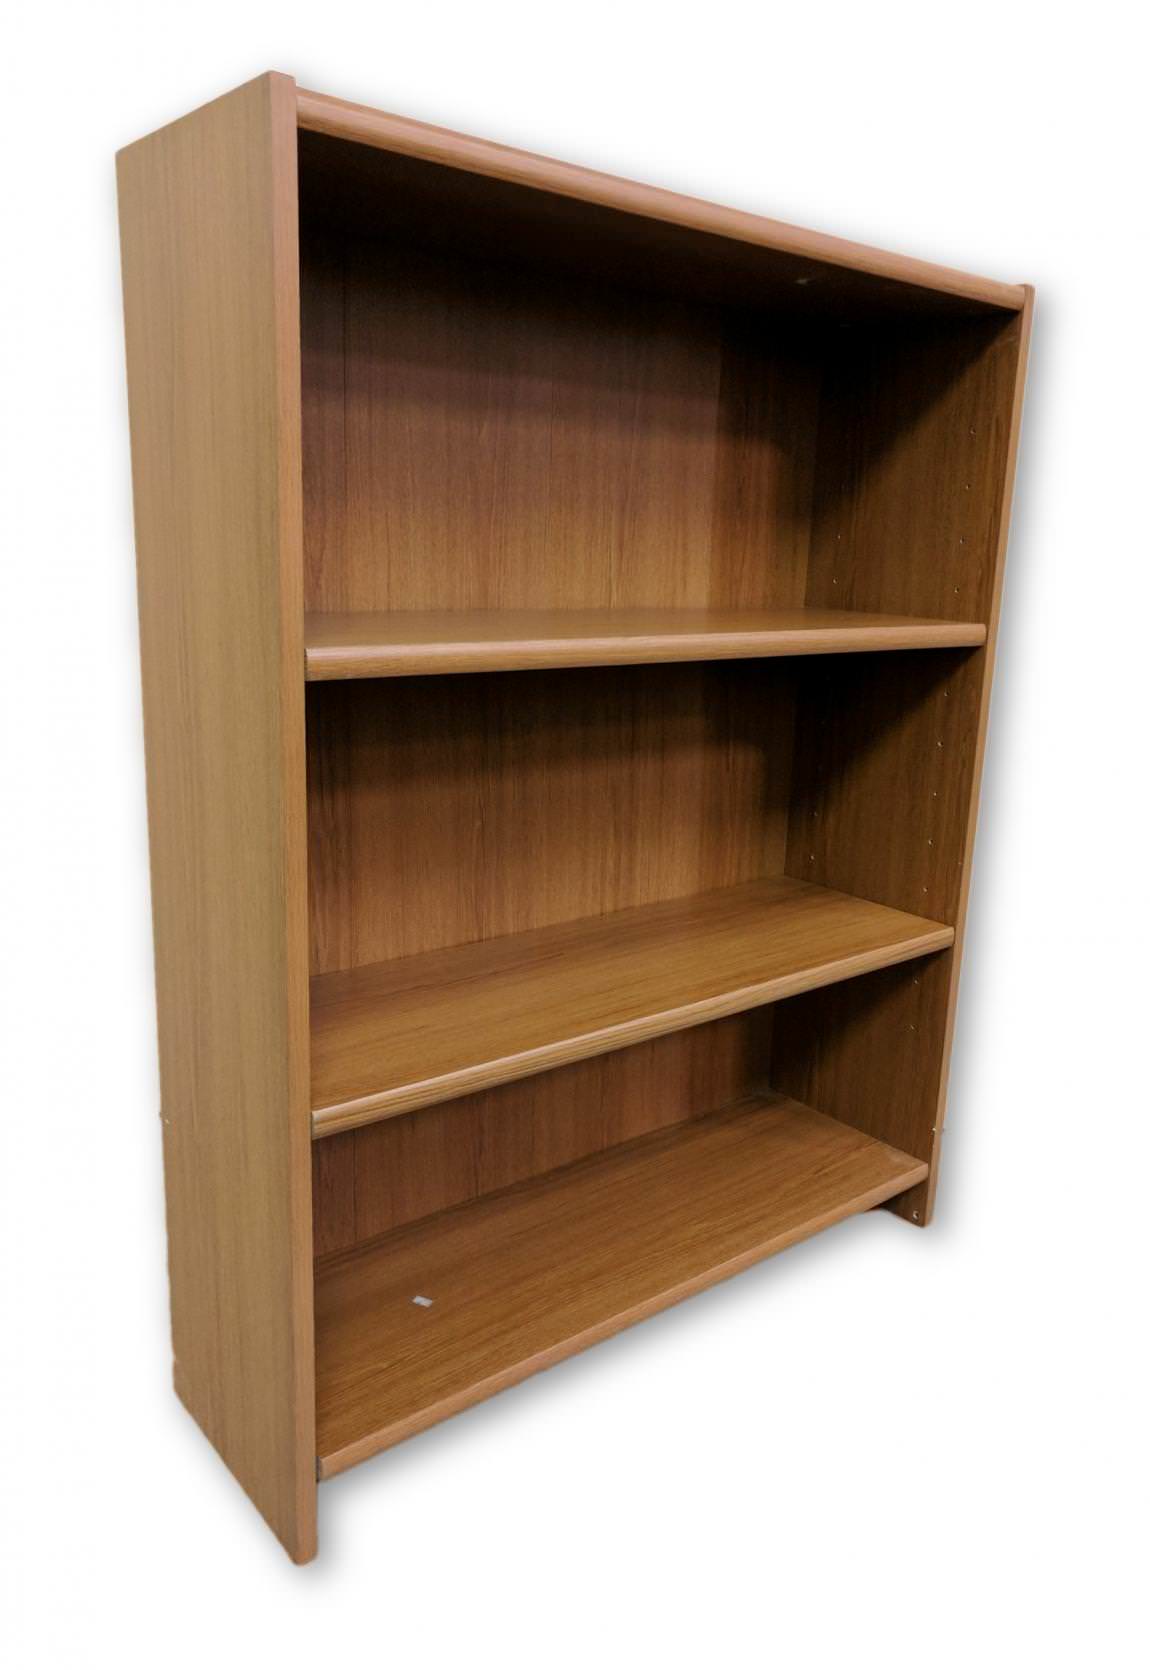 Oak Laminate Bookshelf – 37 Inch Wide